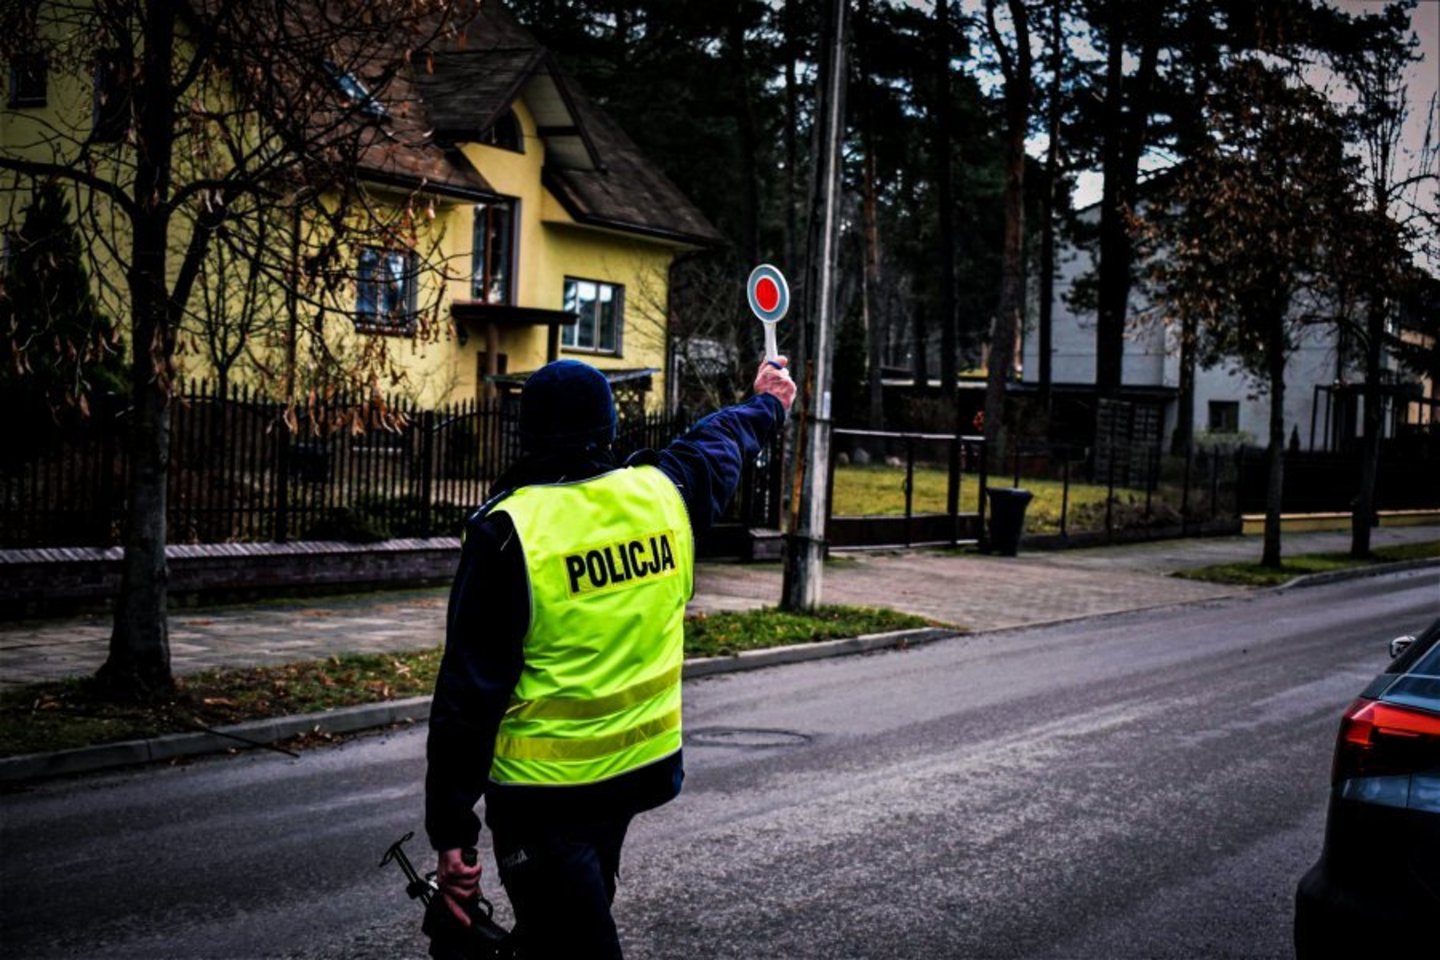  Lenkijos policija surengė didžiulį reidą: didžiausias pažeidėjas – girtas lietuvis vilkiko vairuotojas.<br> Lenkijos policijos/podlaska.policja.gov.pl nuotr.